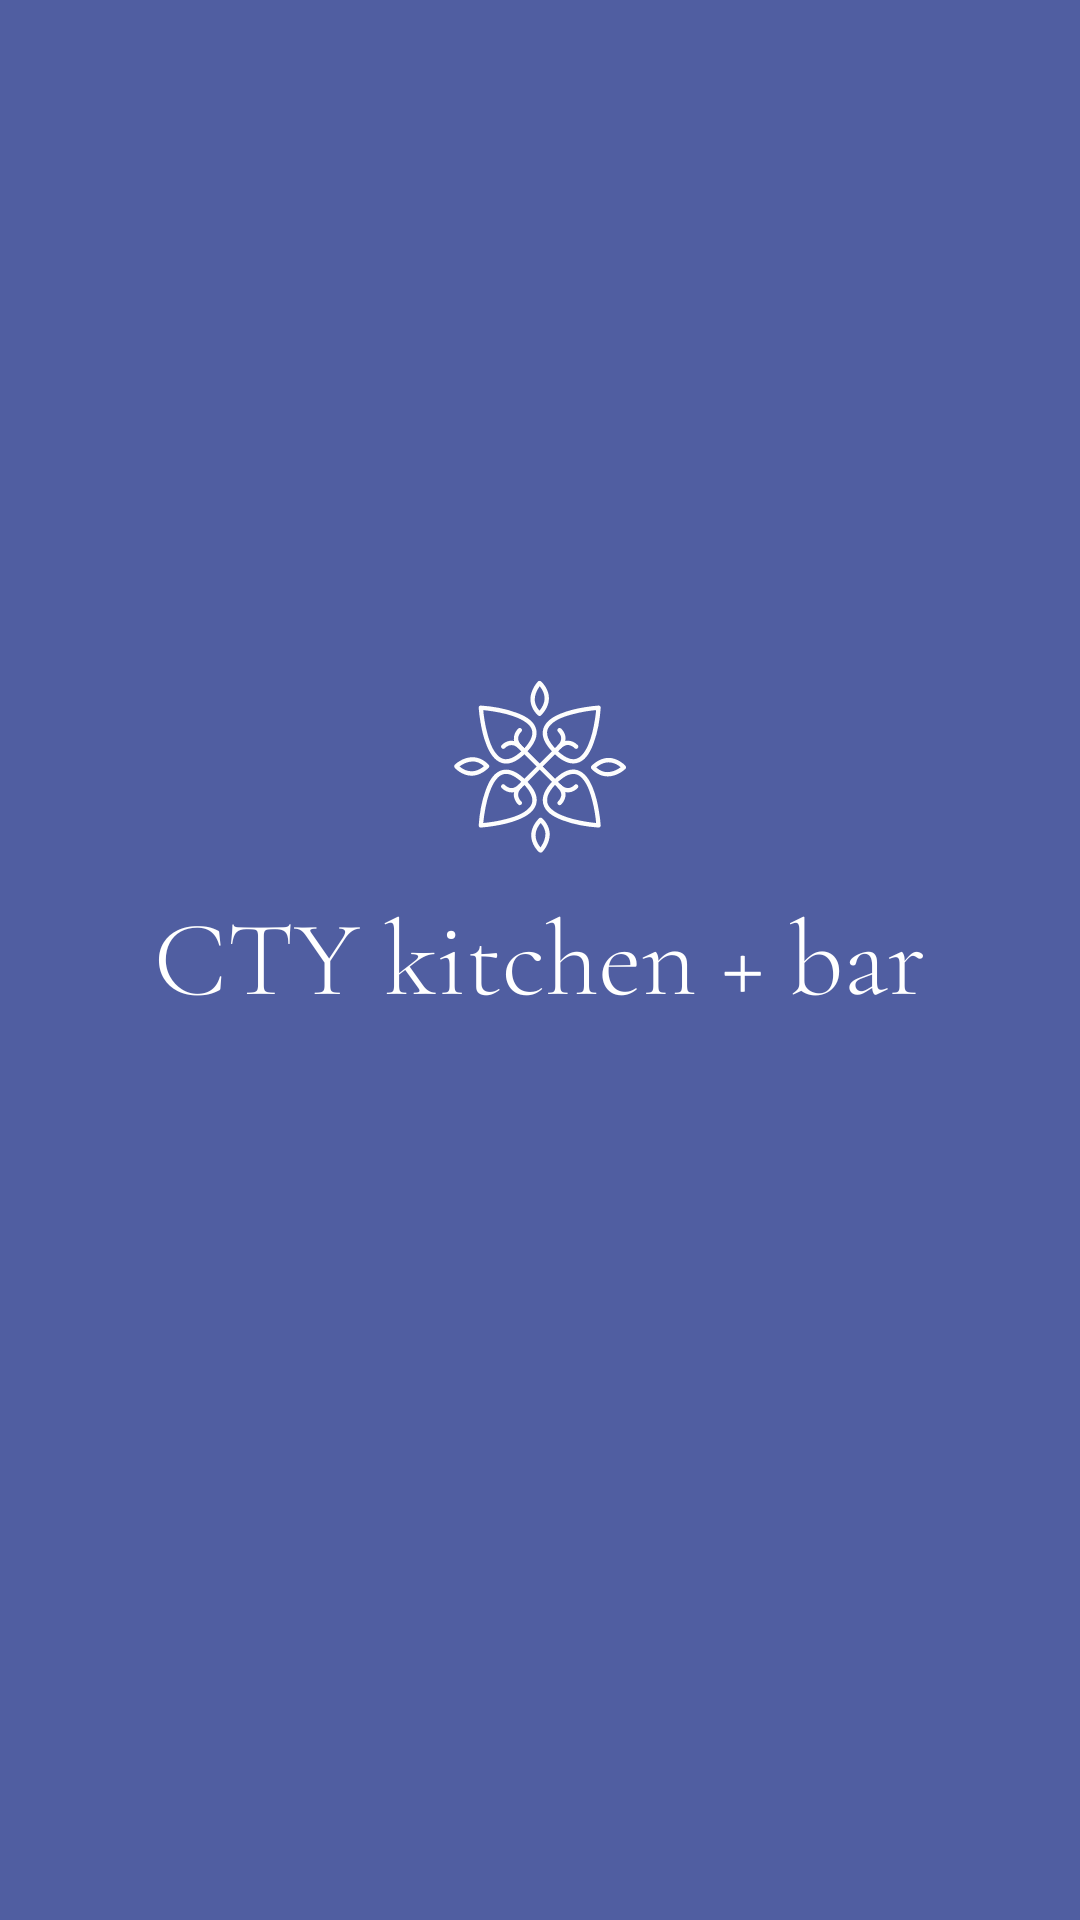 Cty kitchen + bar